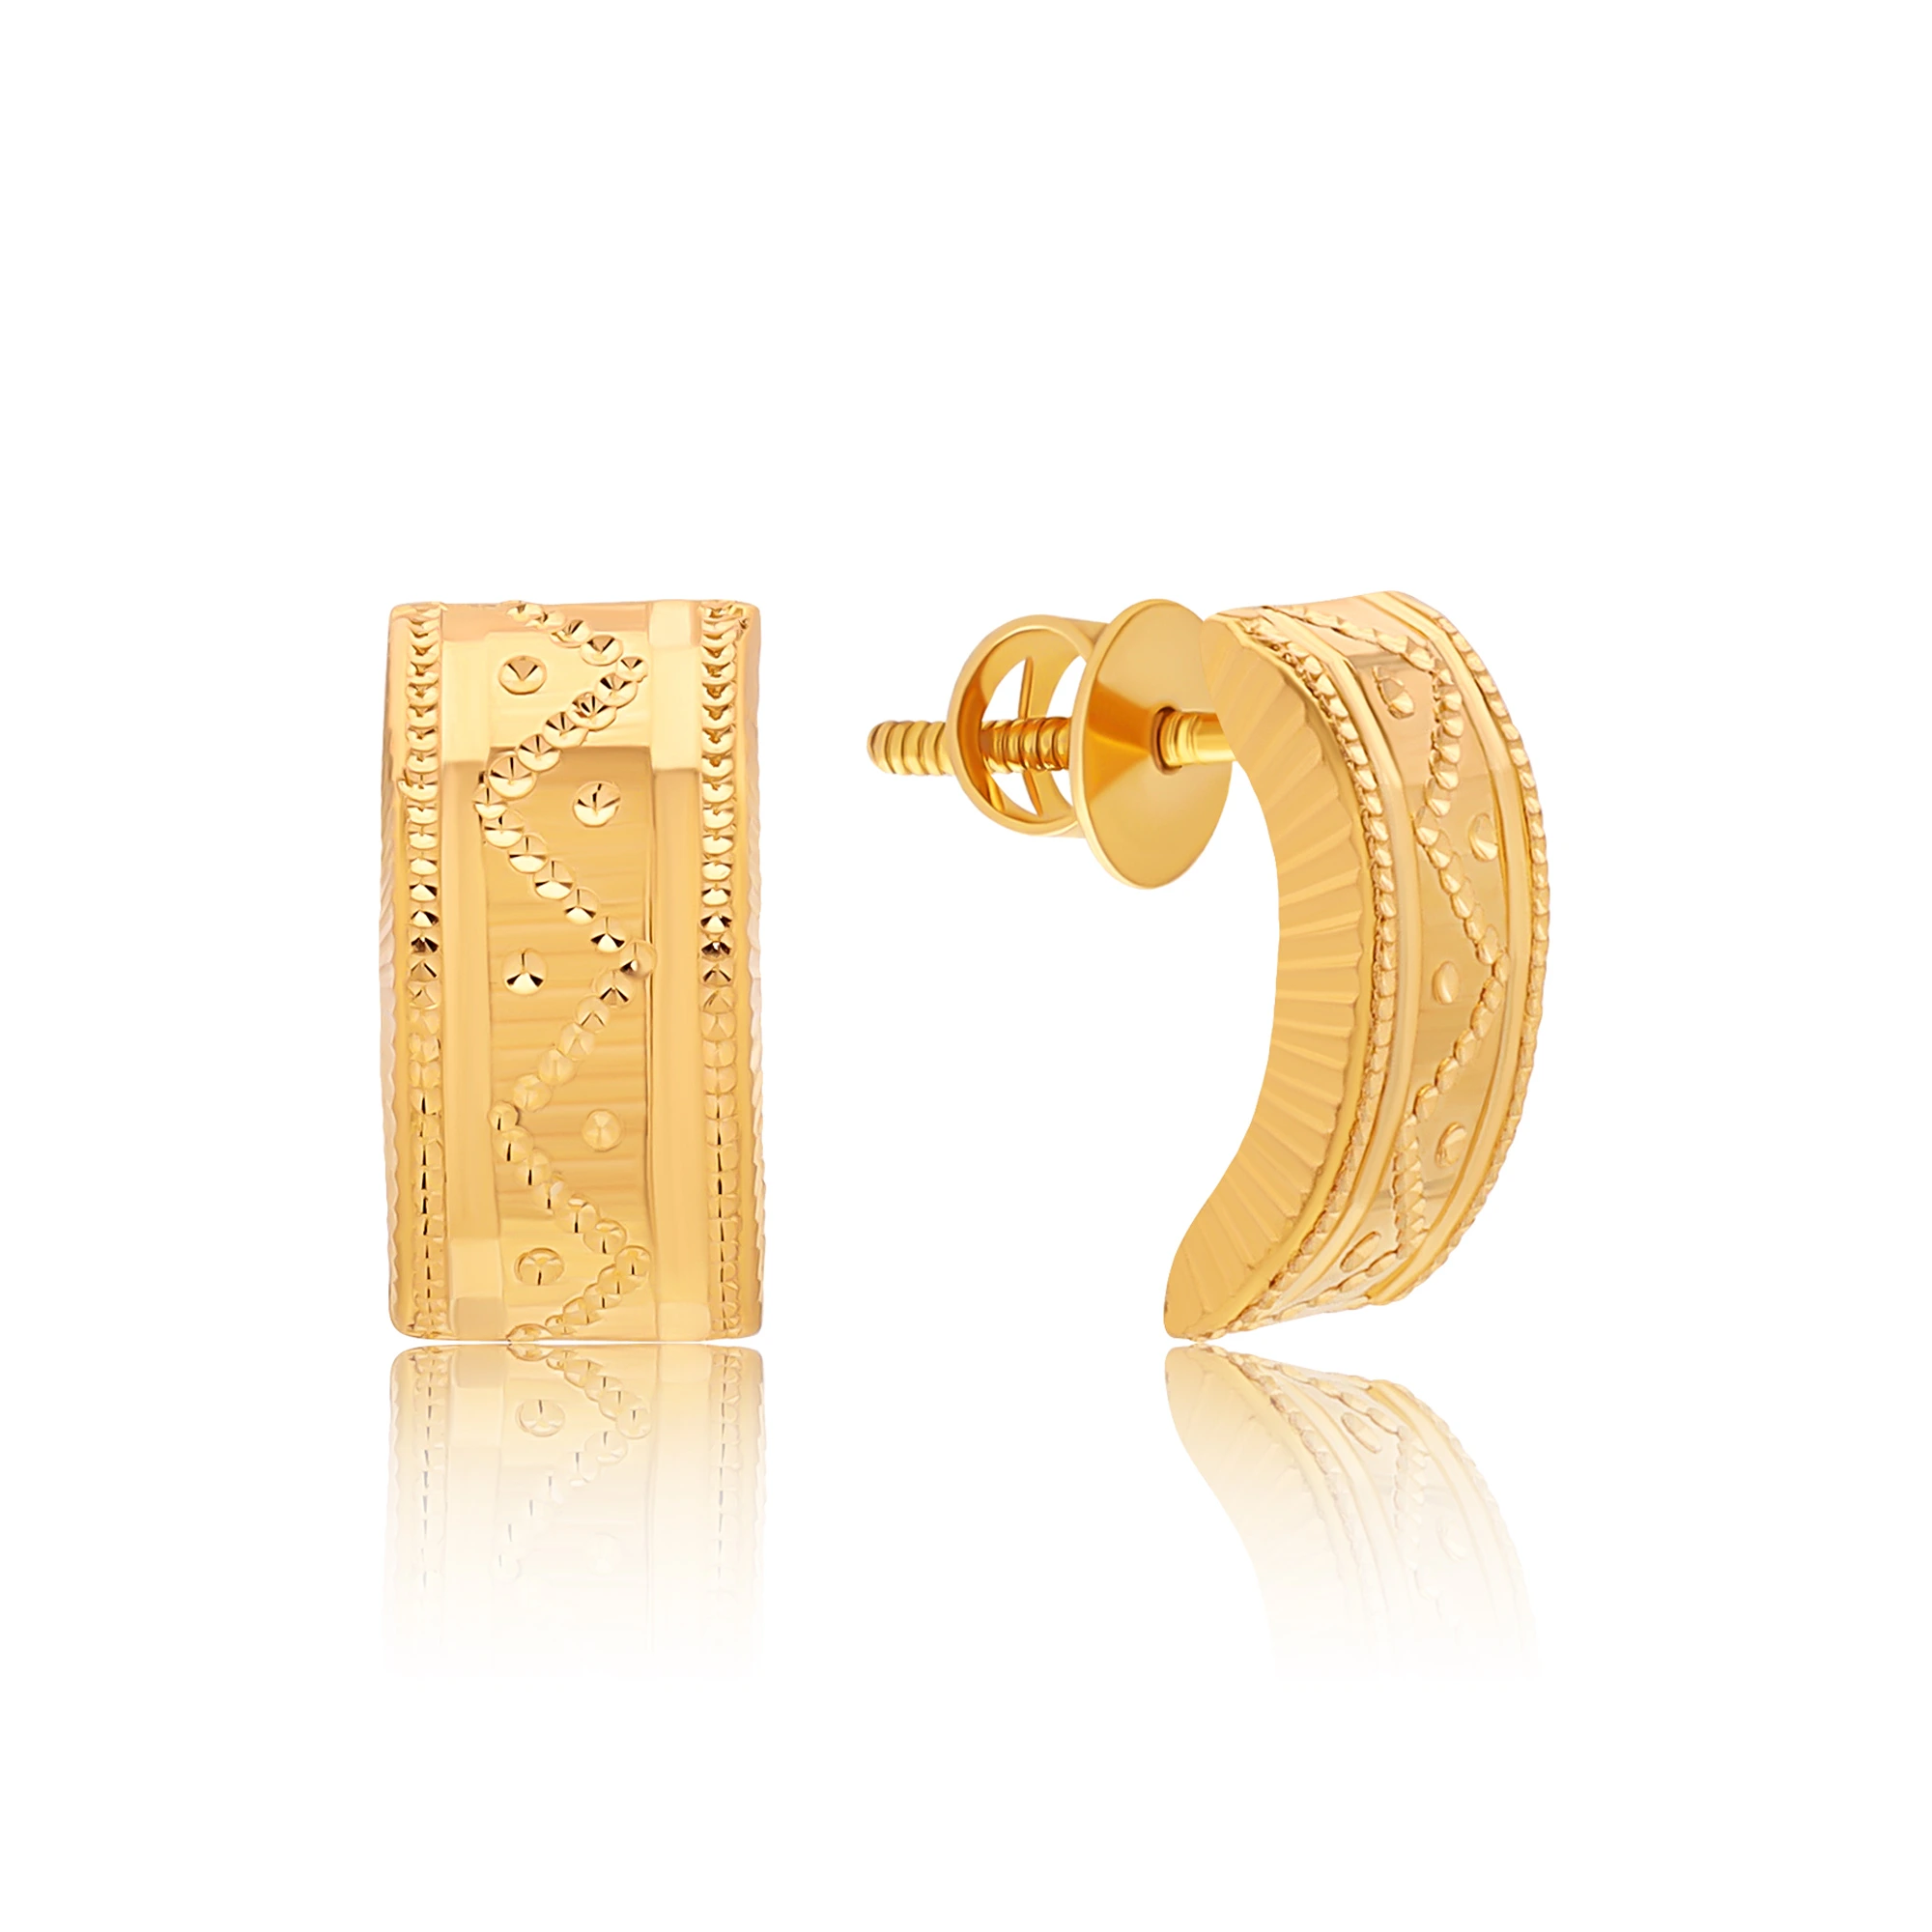 Admirable Gold Hoop Earrings | Trending Hoop Designs | CaratLane